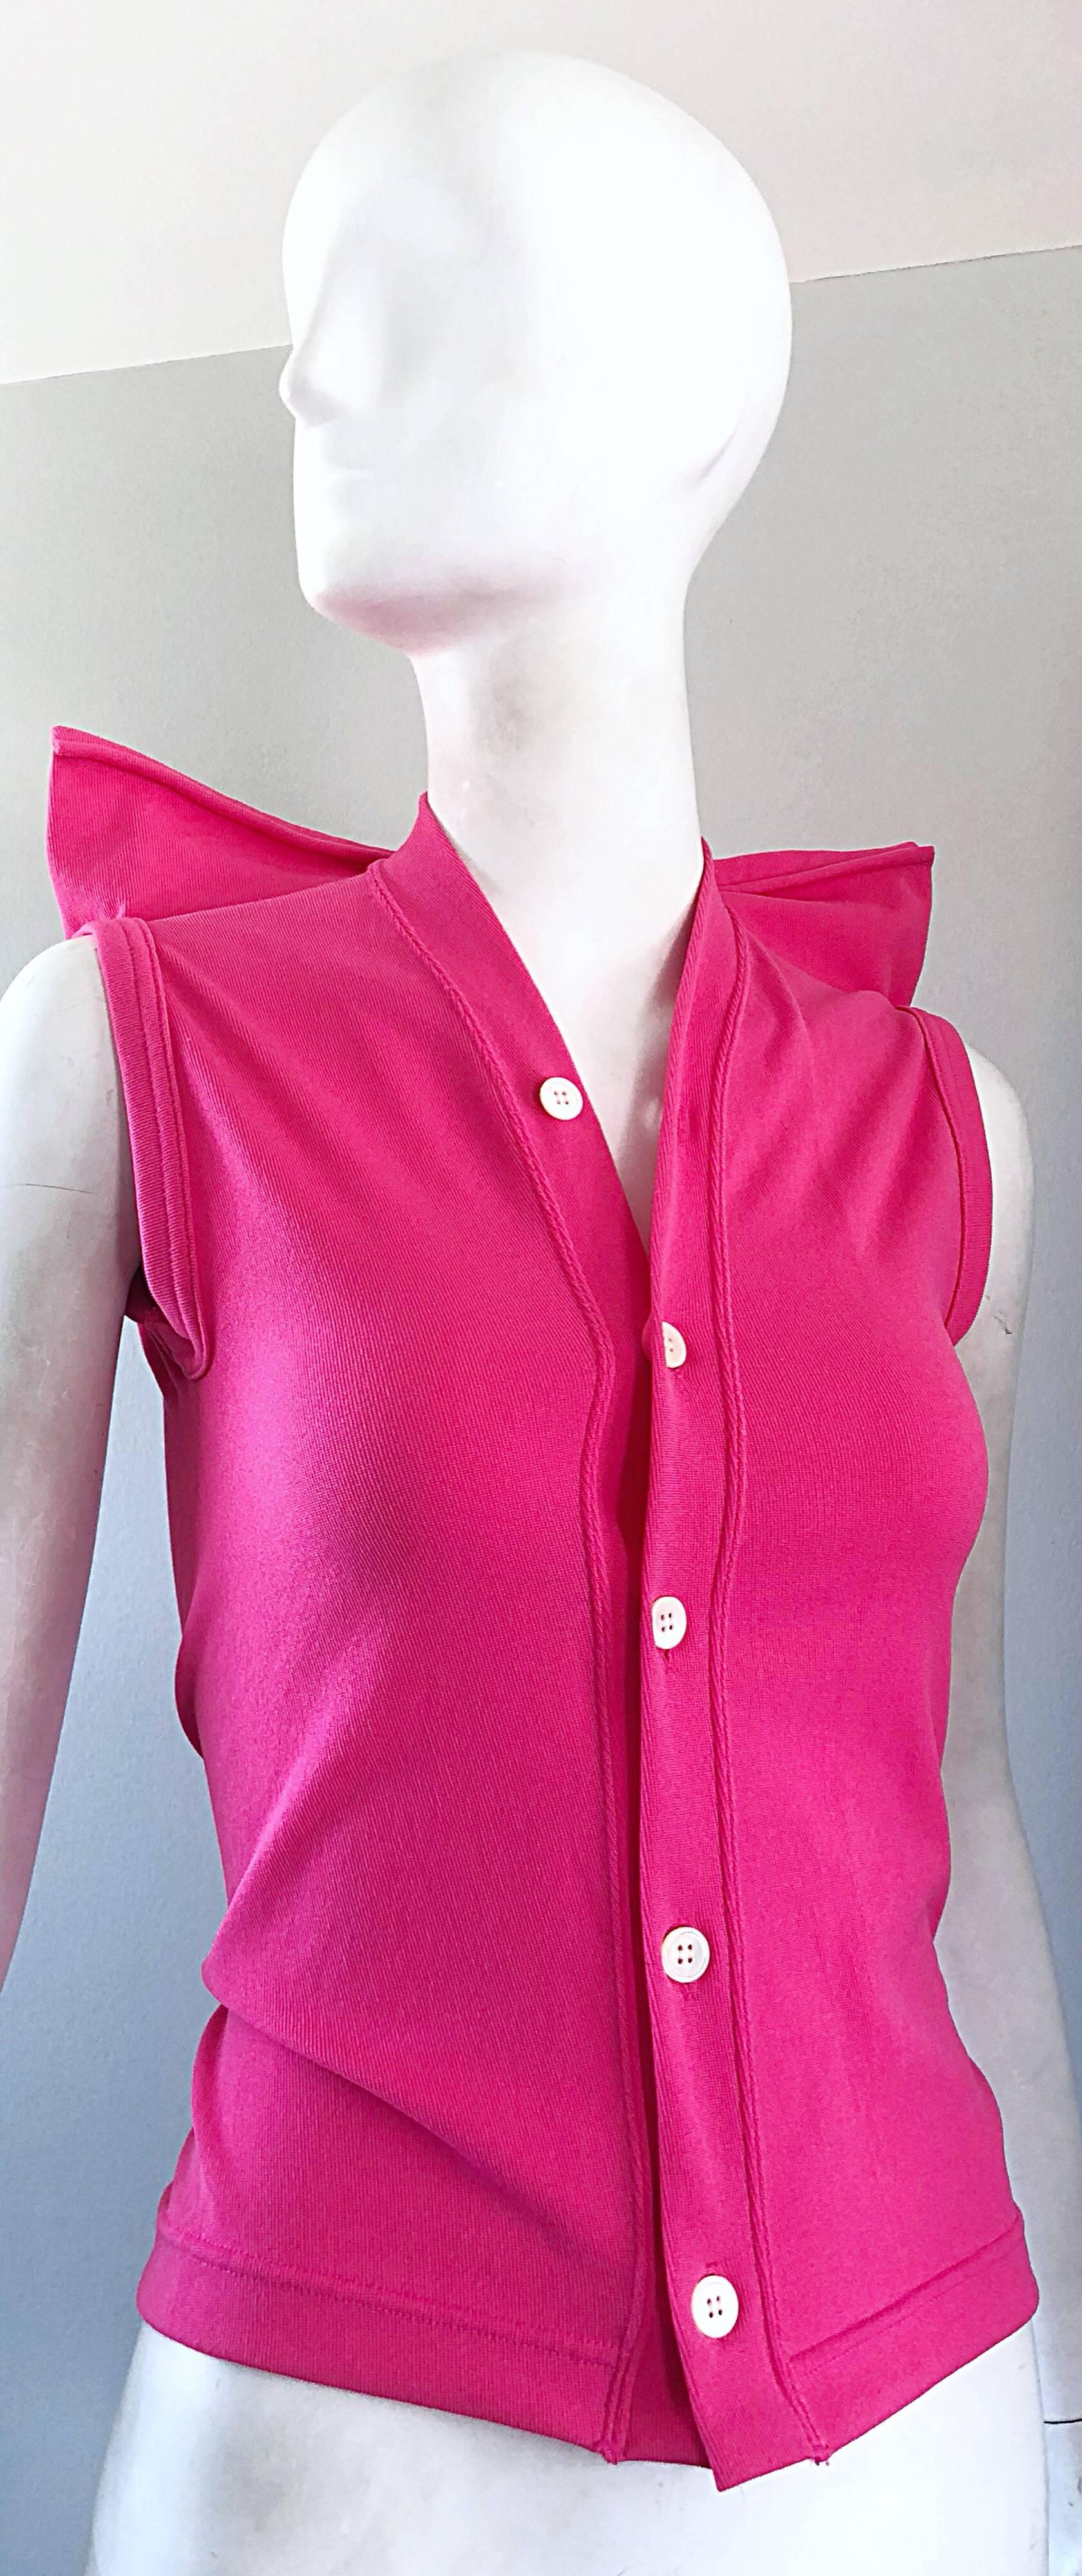 Women's Rare Vintage Comme des Garcons 1990s Hot Pink Avant Garde Futuristic Top Blouse  For Sale